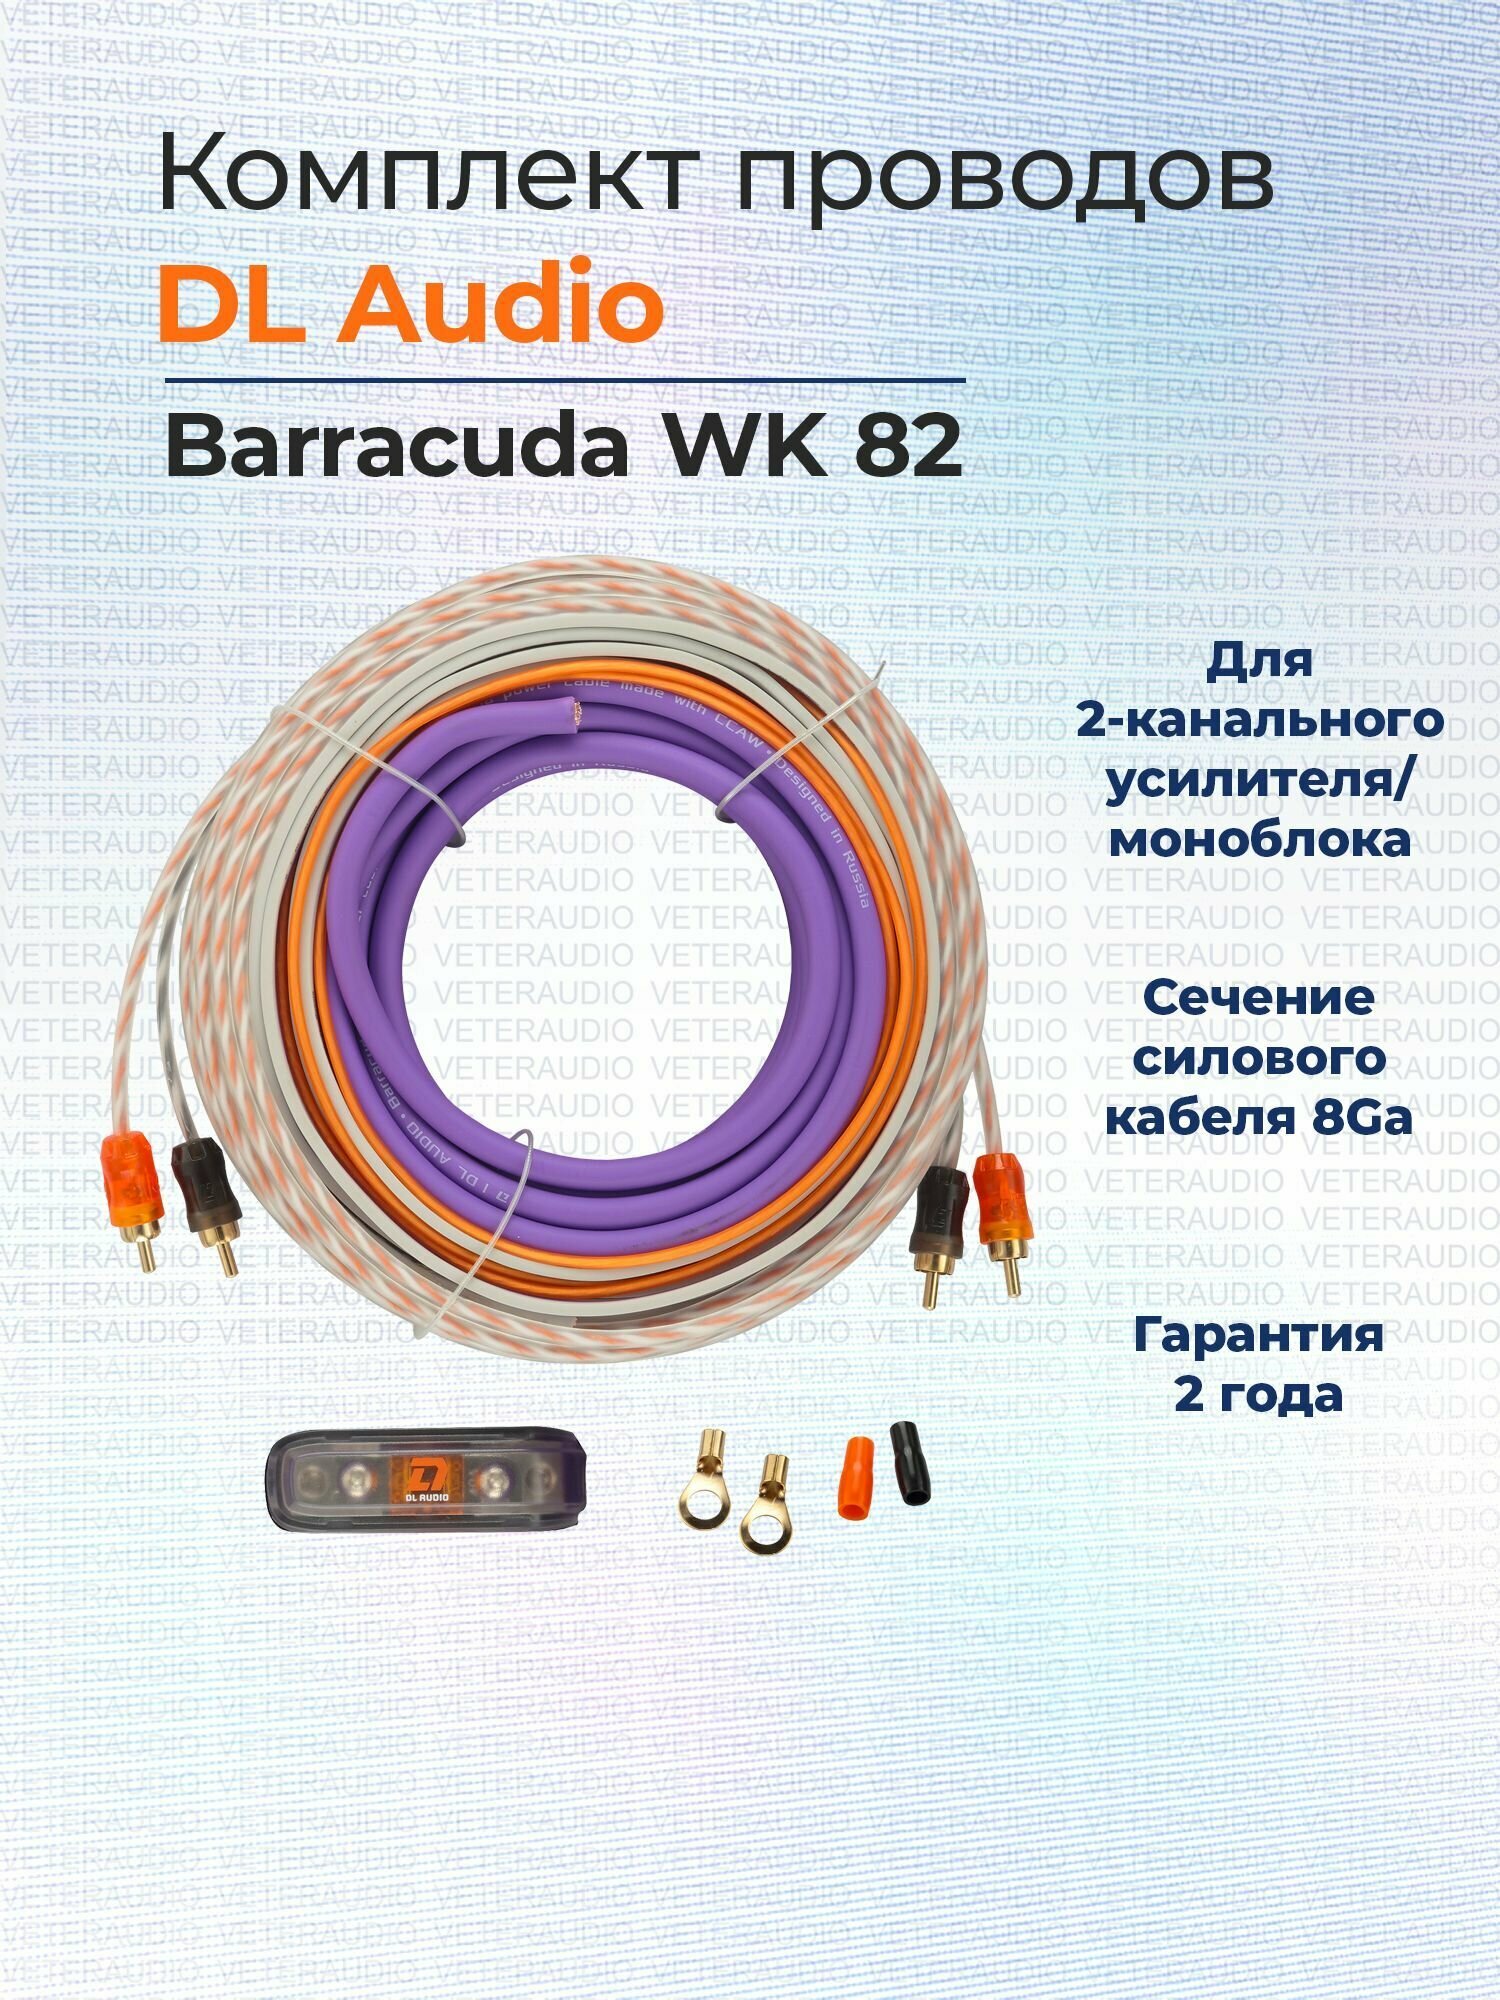 Установочный набор DL Audio Barracuda WK 82